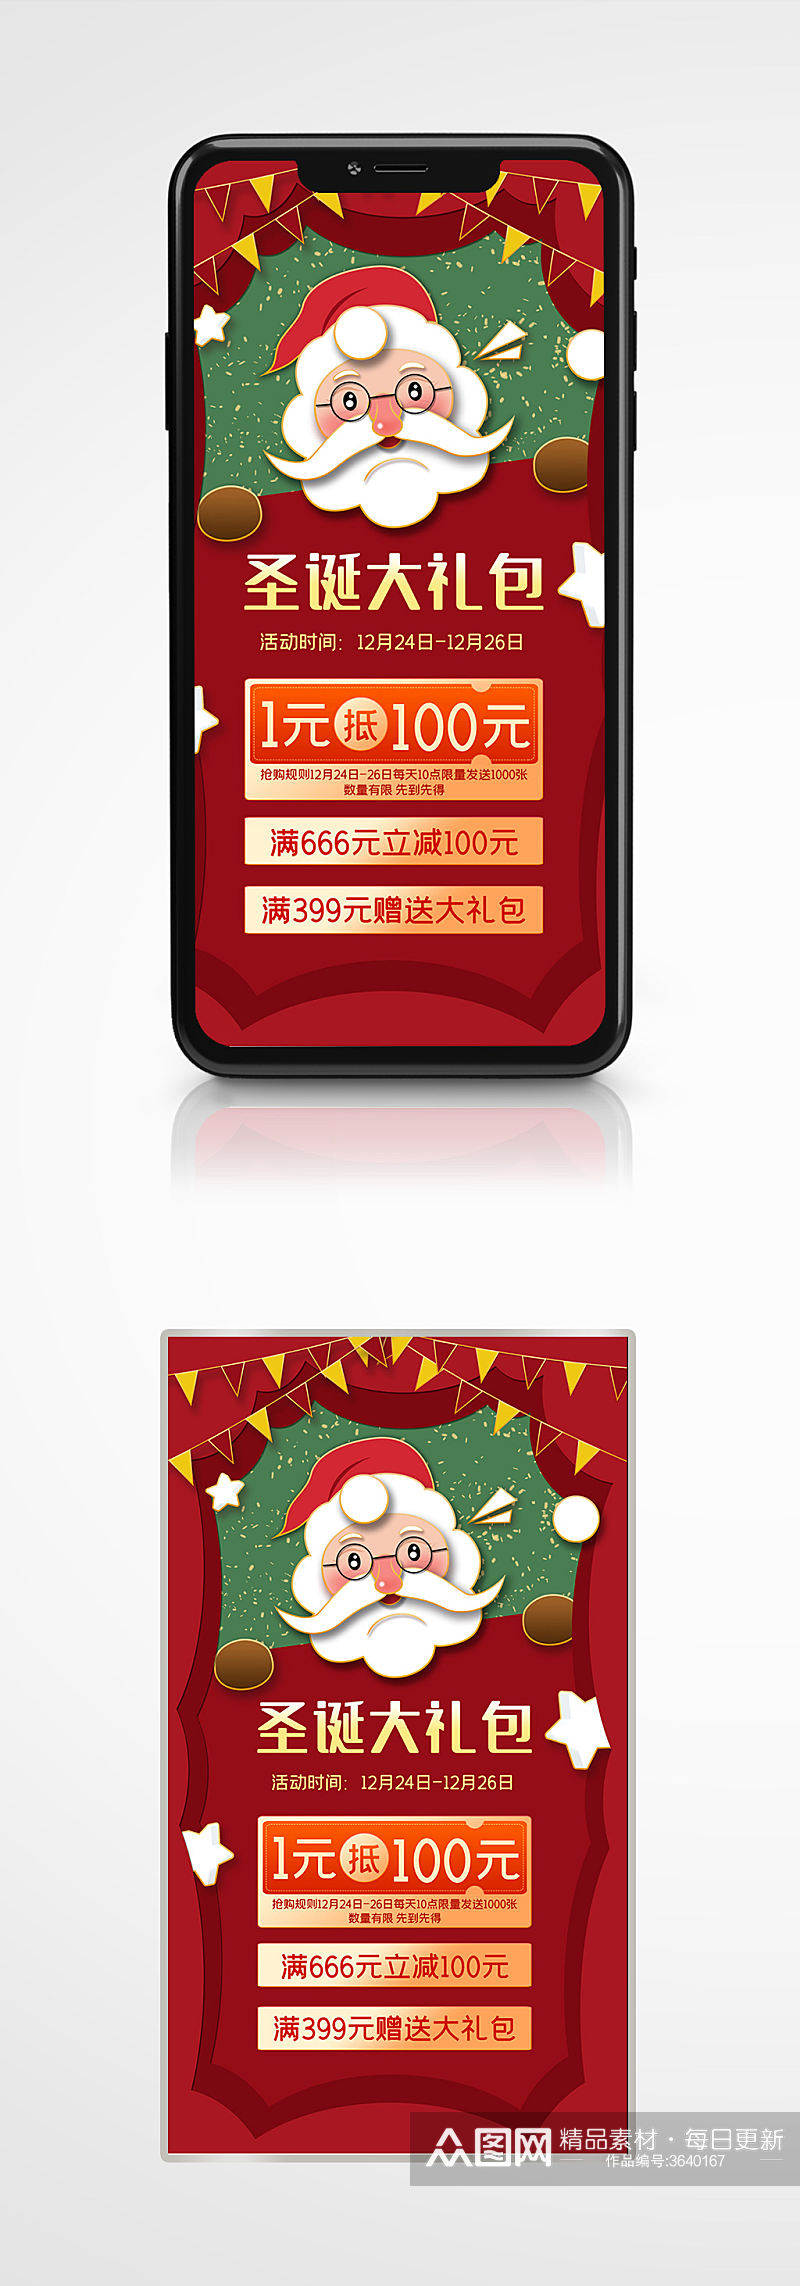 扁平风圣诞大礼包促销手机海报插画卡通素材